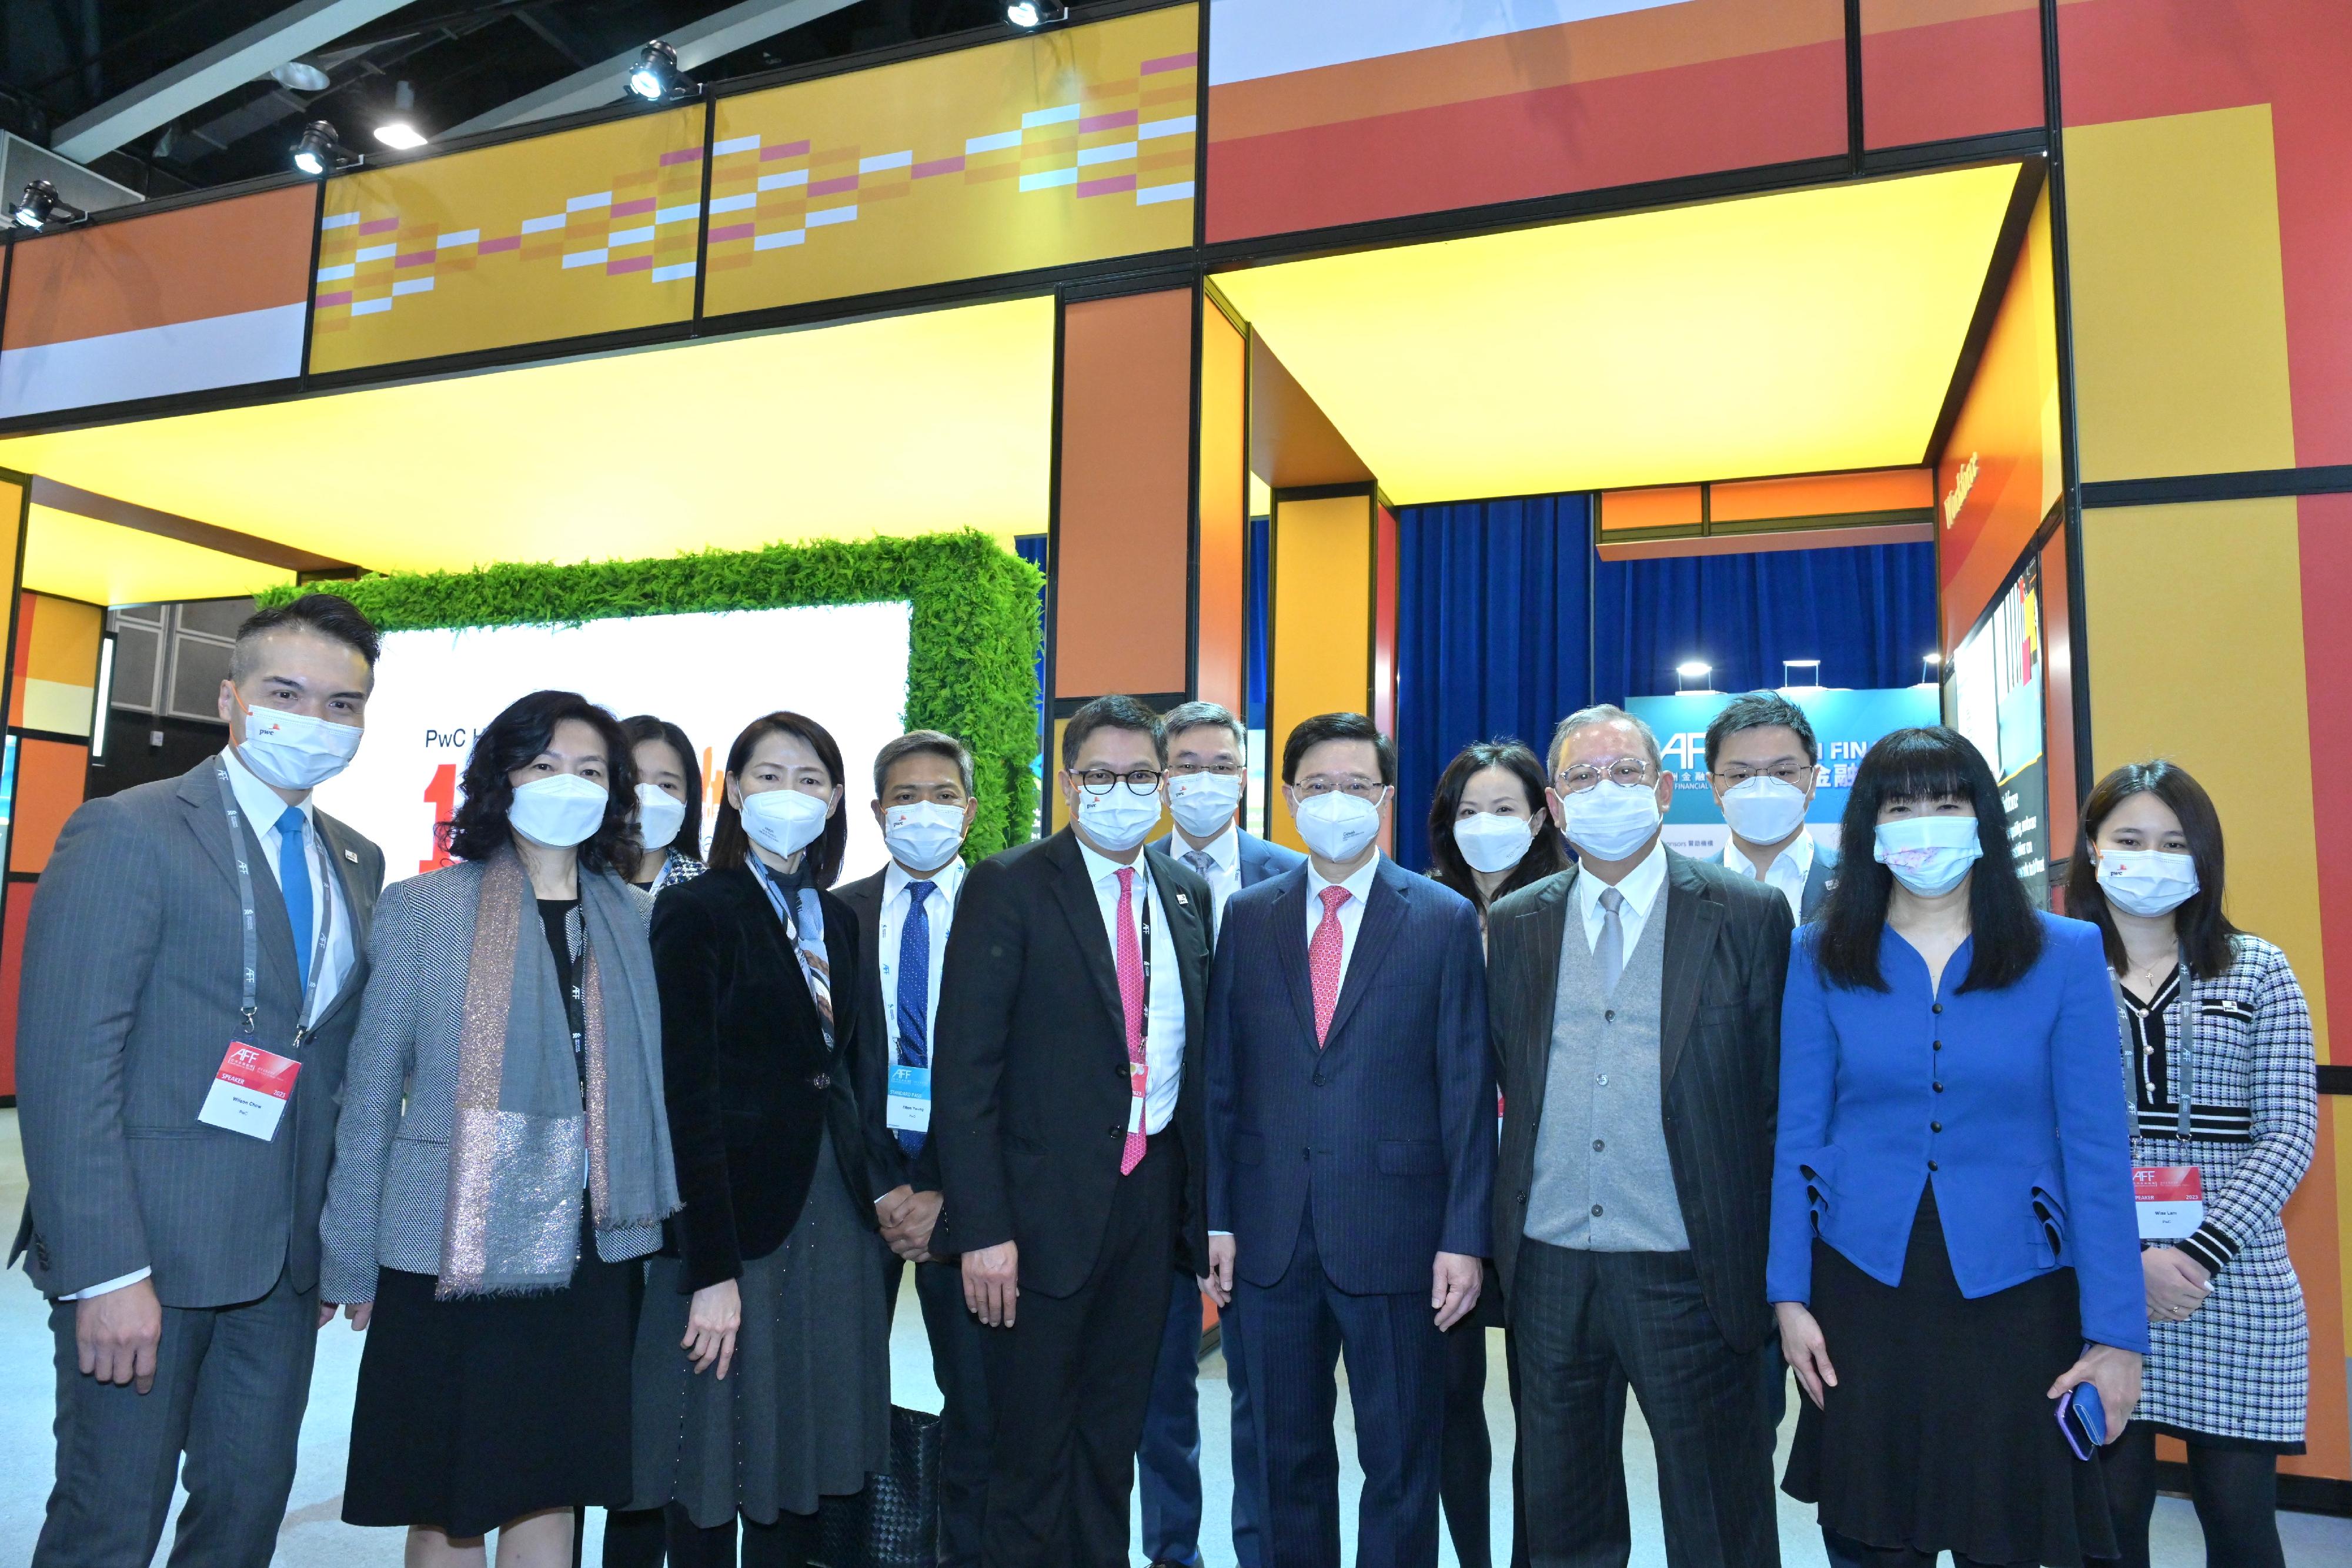 行政長官李家超今日（一月十一日）上午出席在香港會議展覽中心舉行的亞洲金融論壇。圖示李家超（前排右三）在展覽和其他嘉賓合照。